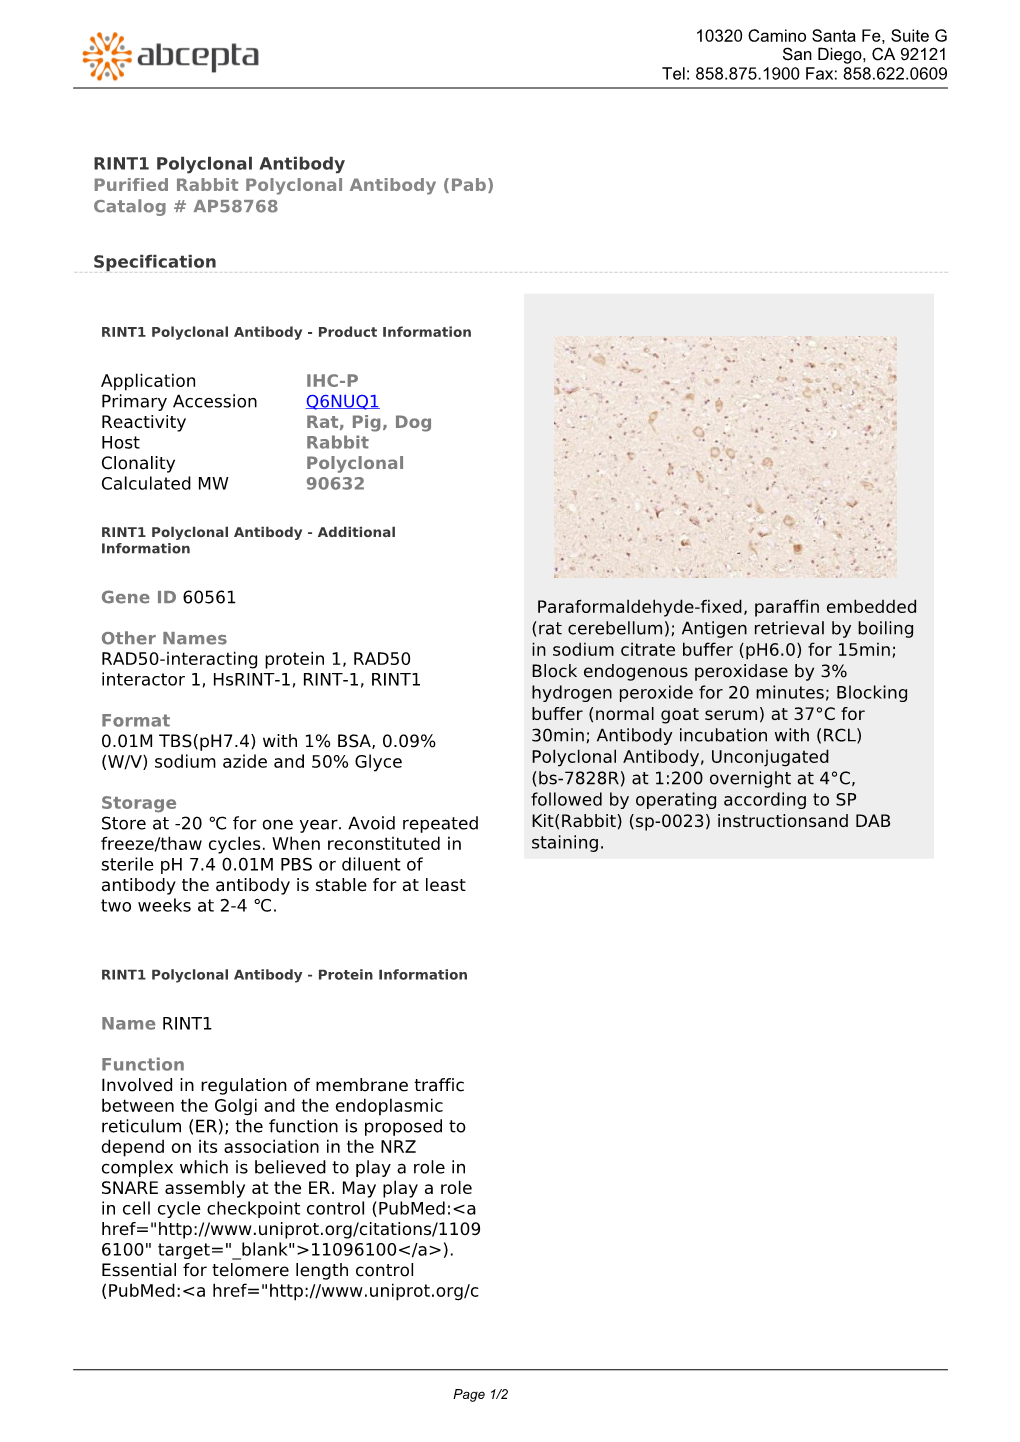 RINT1 Polyclonal Antibody Purified Rabbit Polyclonal Antibody (Pab) Catalog # AP58768